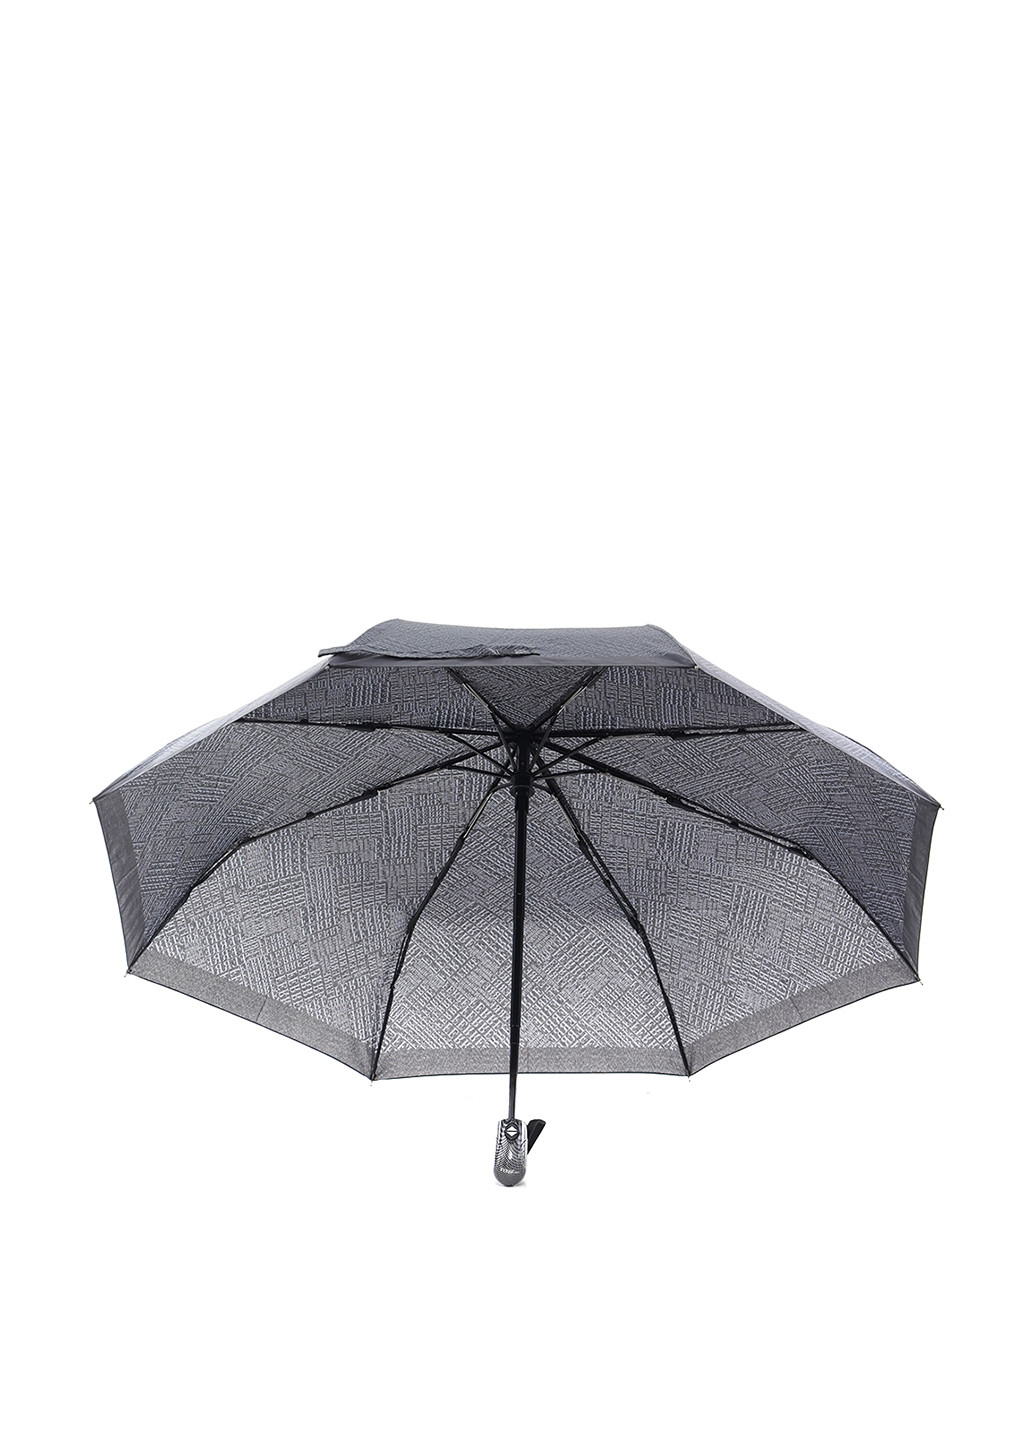 Зонт Ferre Milano 2900055854017 складной чёрный